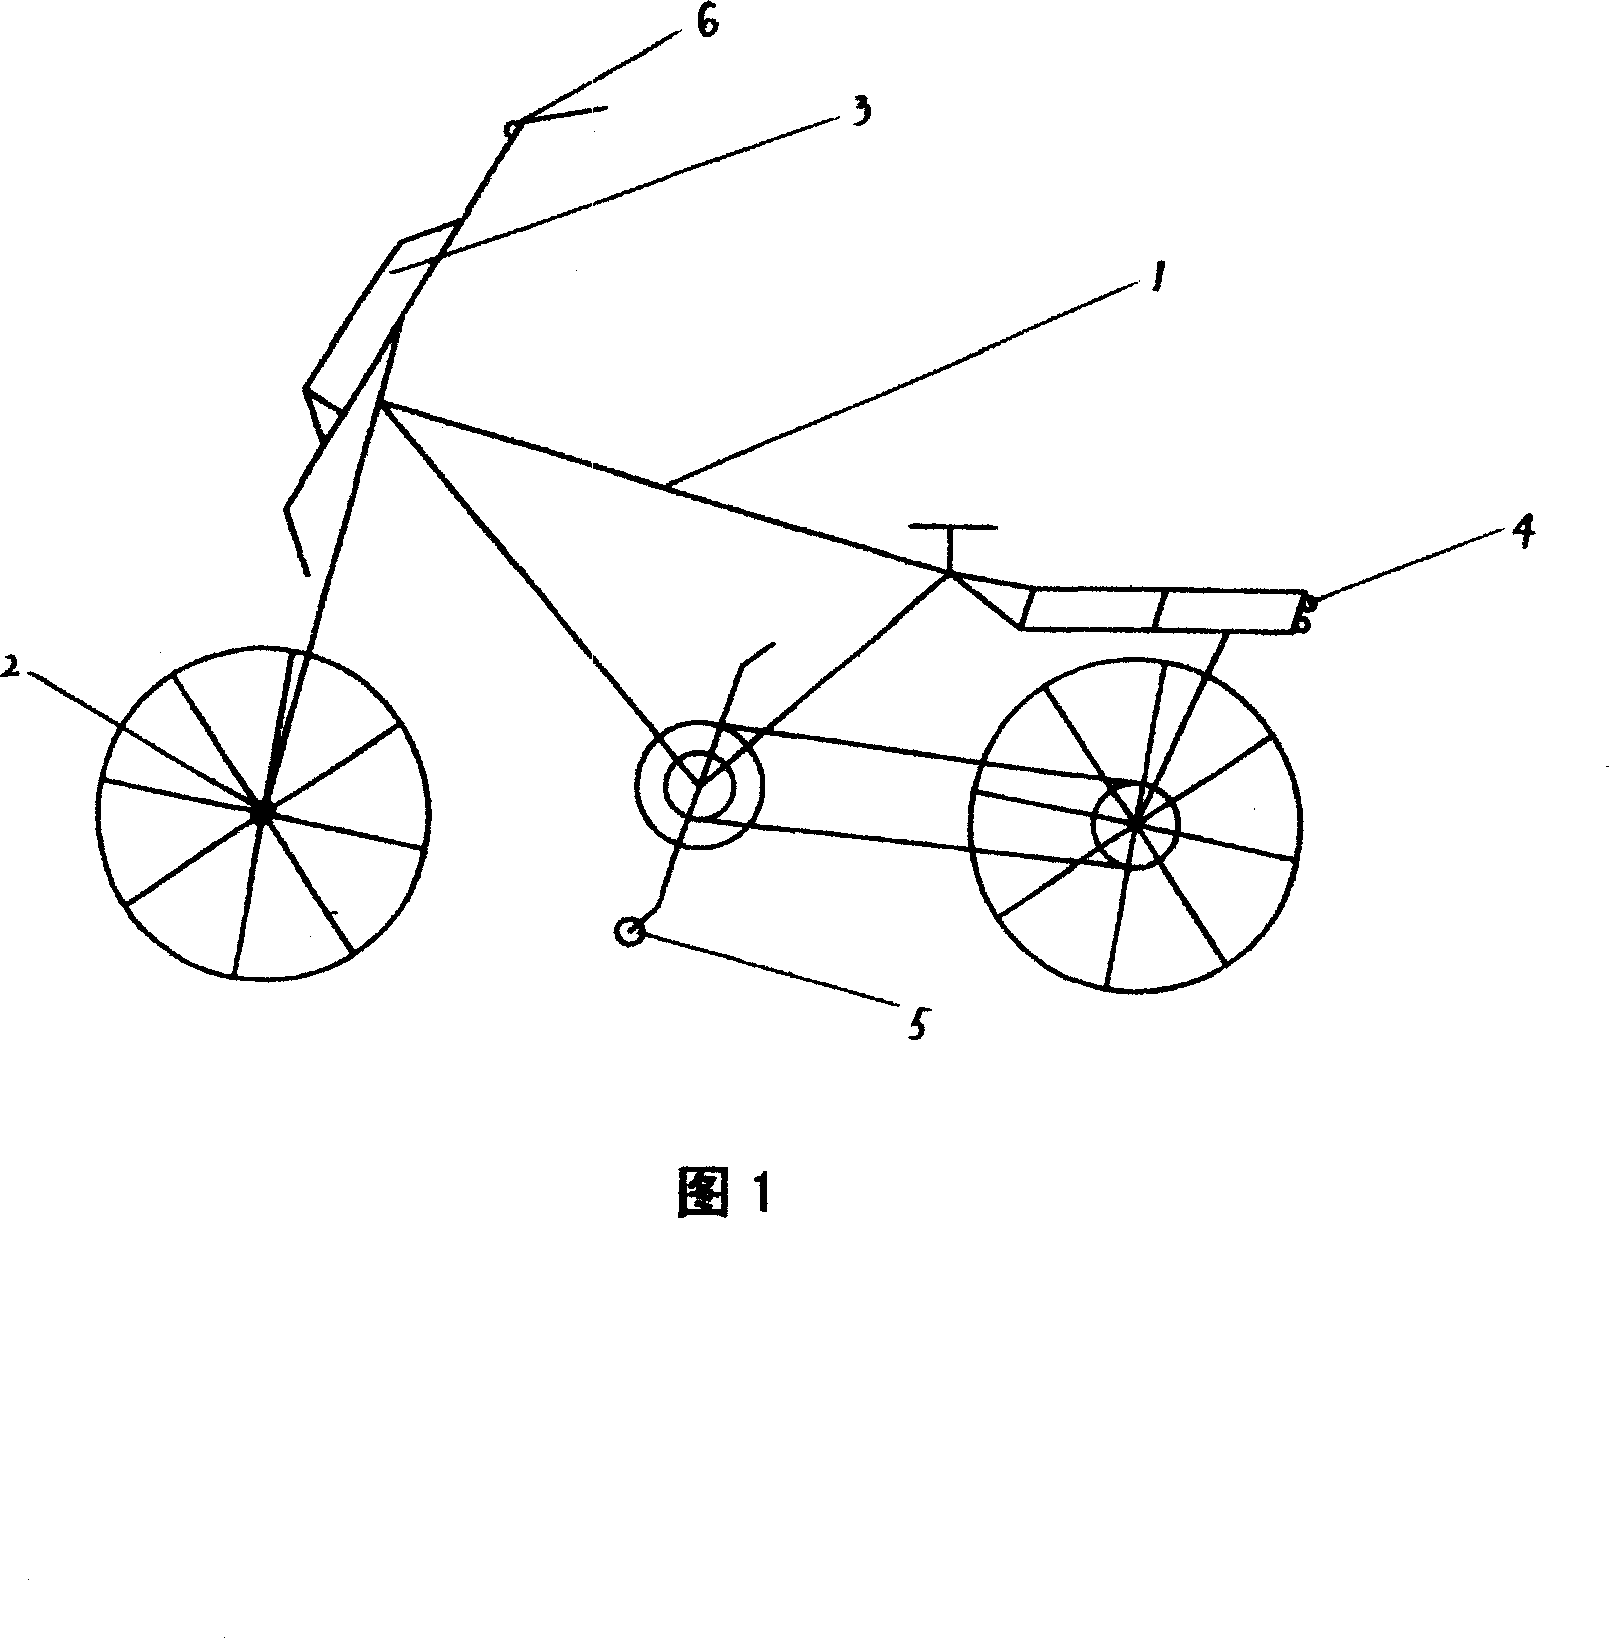 Bicycle lighting arrangement